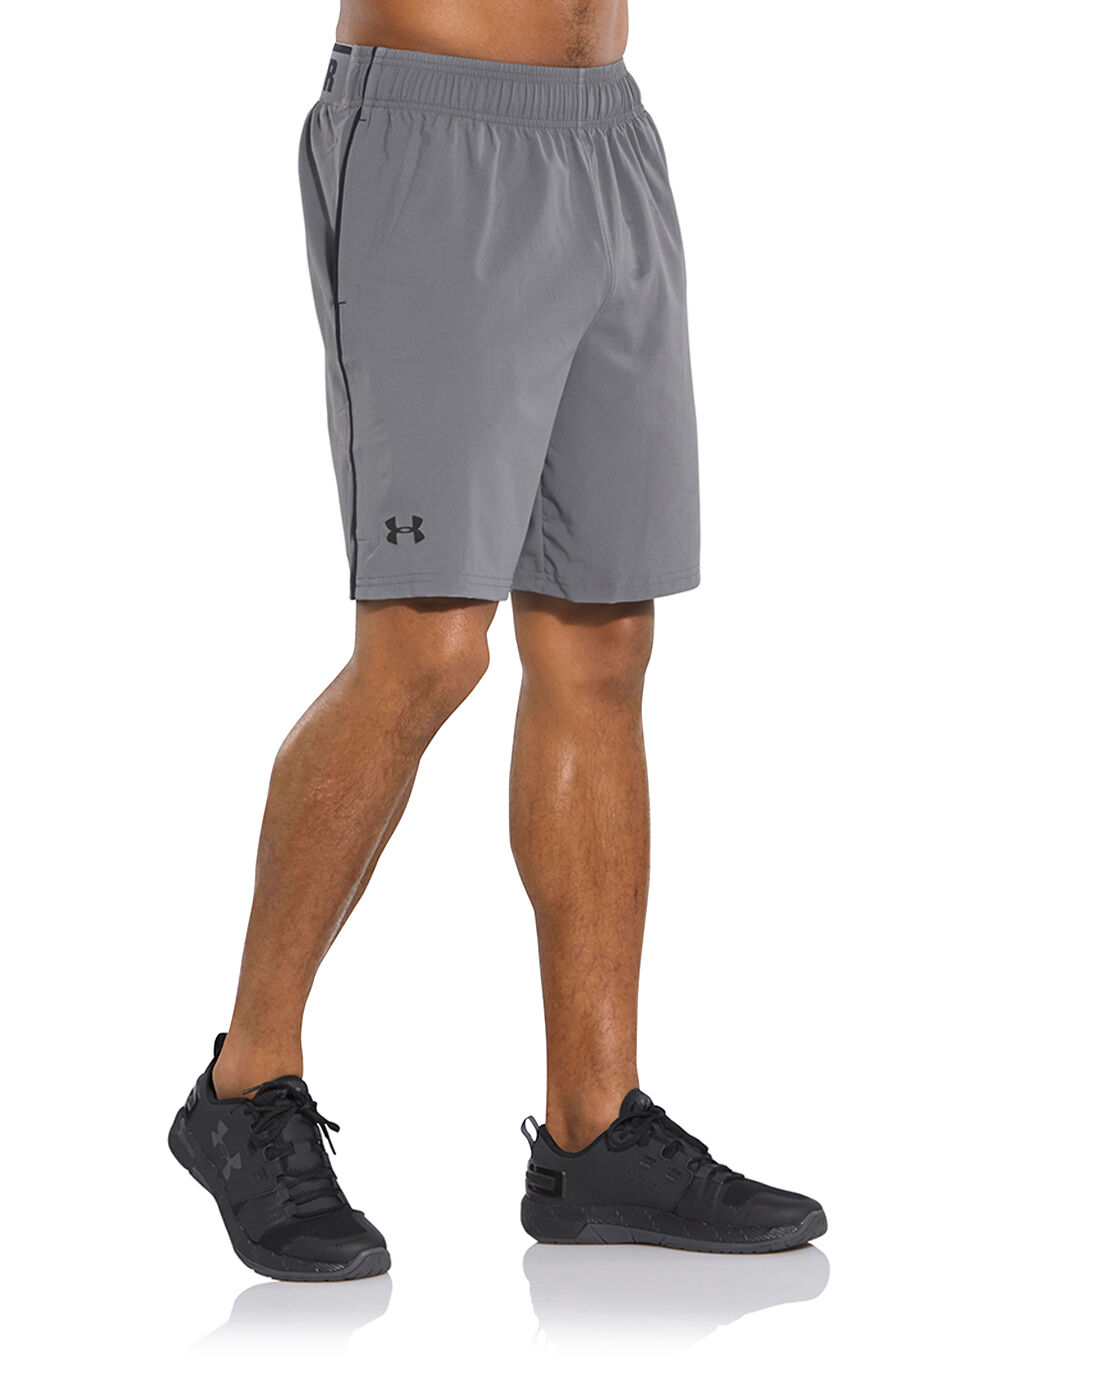 Under Armour Herren Mirage 8 inch Training Sporthose Shorts Bequeme Passform 